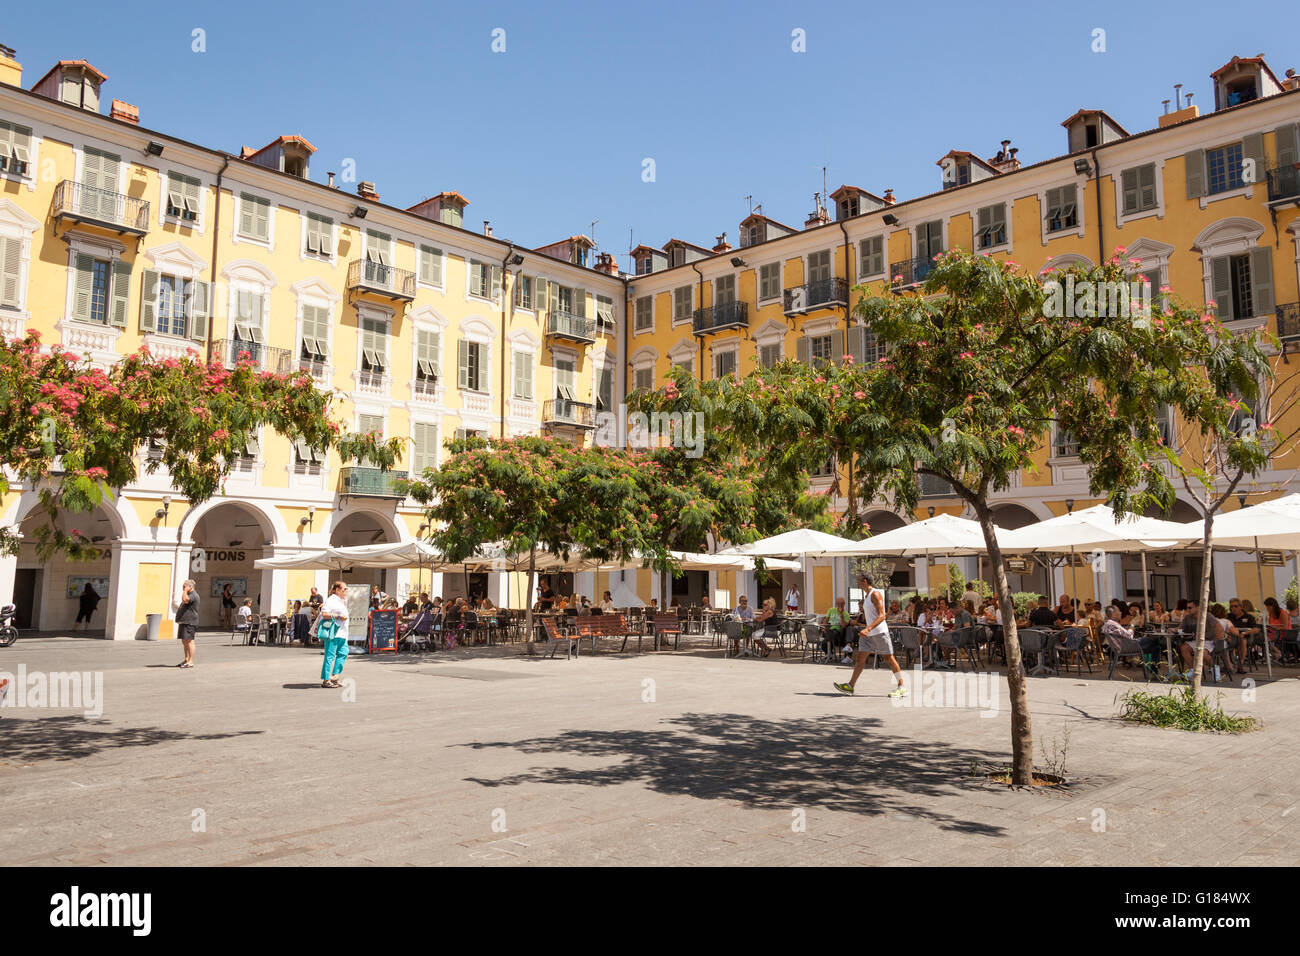 Place Garibaldi, Place Garibaldi, à Nice, Côte d'Azur, France Banque D'Images